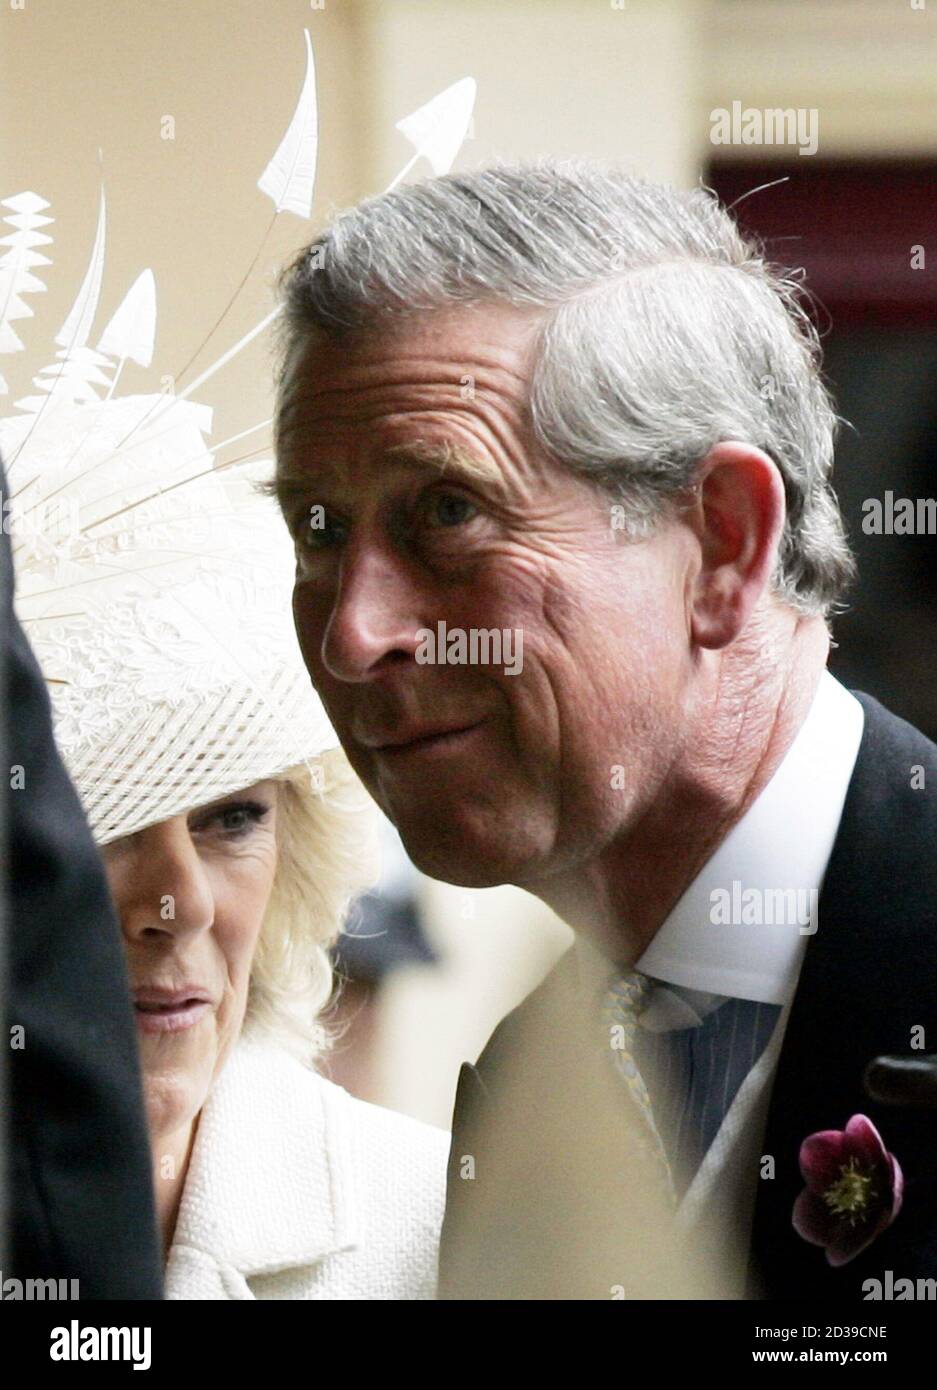 Prince Charles (R) und Camilla Parker Bowles Großbritanniens kommen an der Guildhall in Windsor, Südengland, für ihre standesamtliche Trauung, 9. April 2005. Prinz Charles und seine langjährige Partnerin Camilla, die Herzogin von Cornwall auf die Ehe, die geworden, heiratete am Samstag in einer Low-Key Zeremonie. Stockfoto